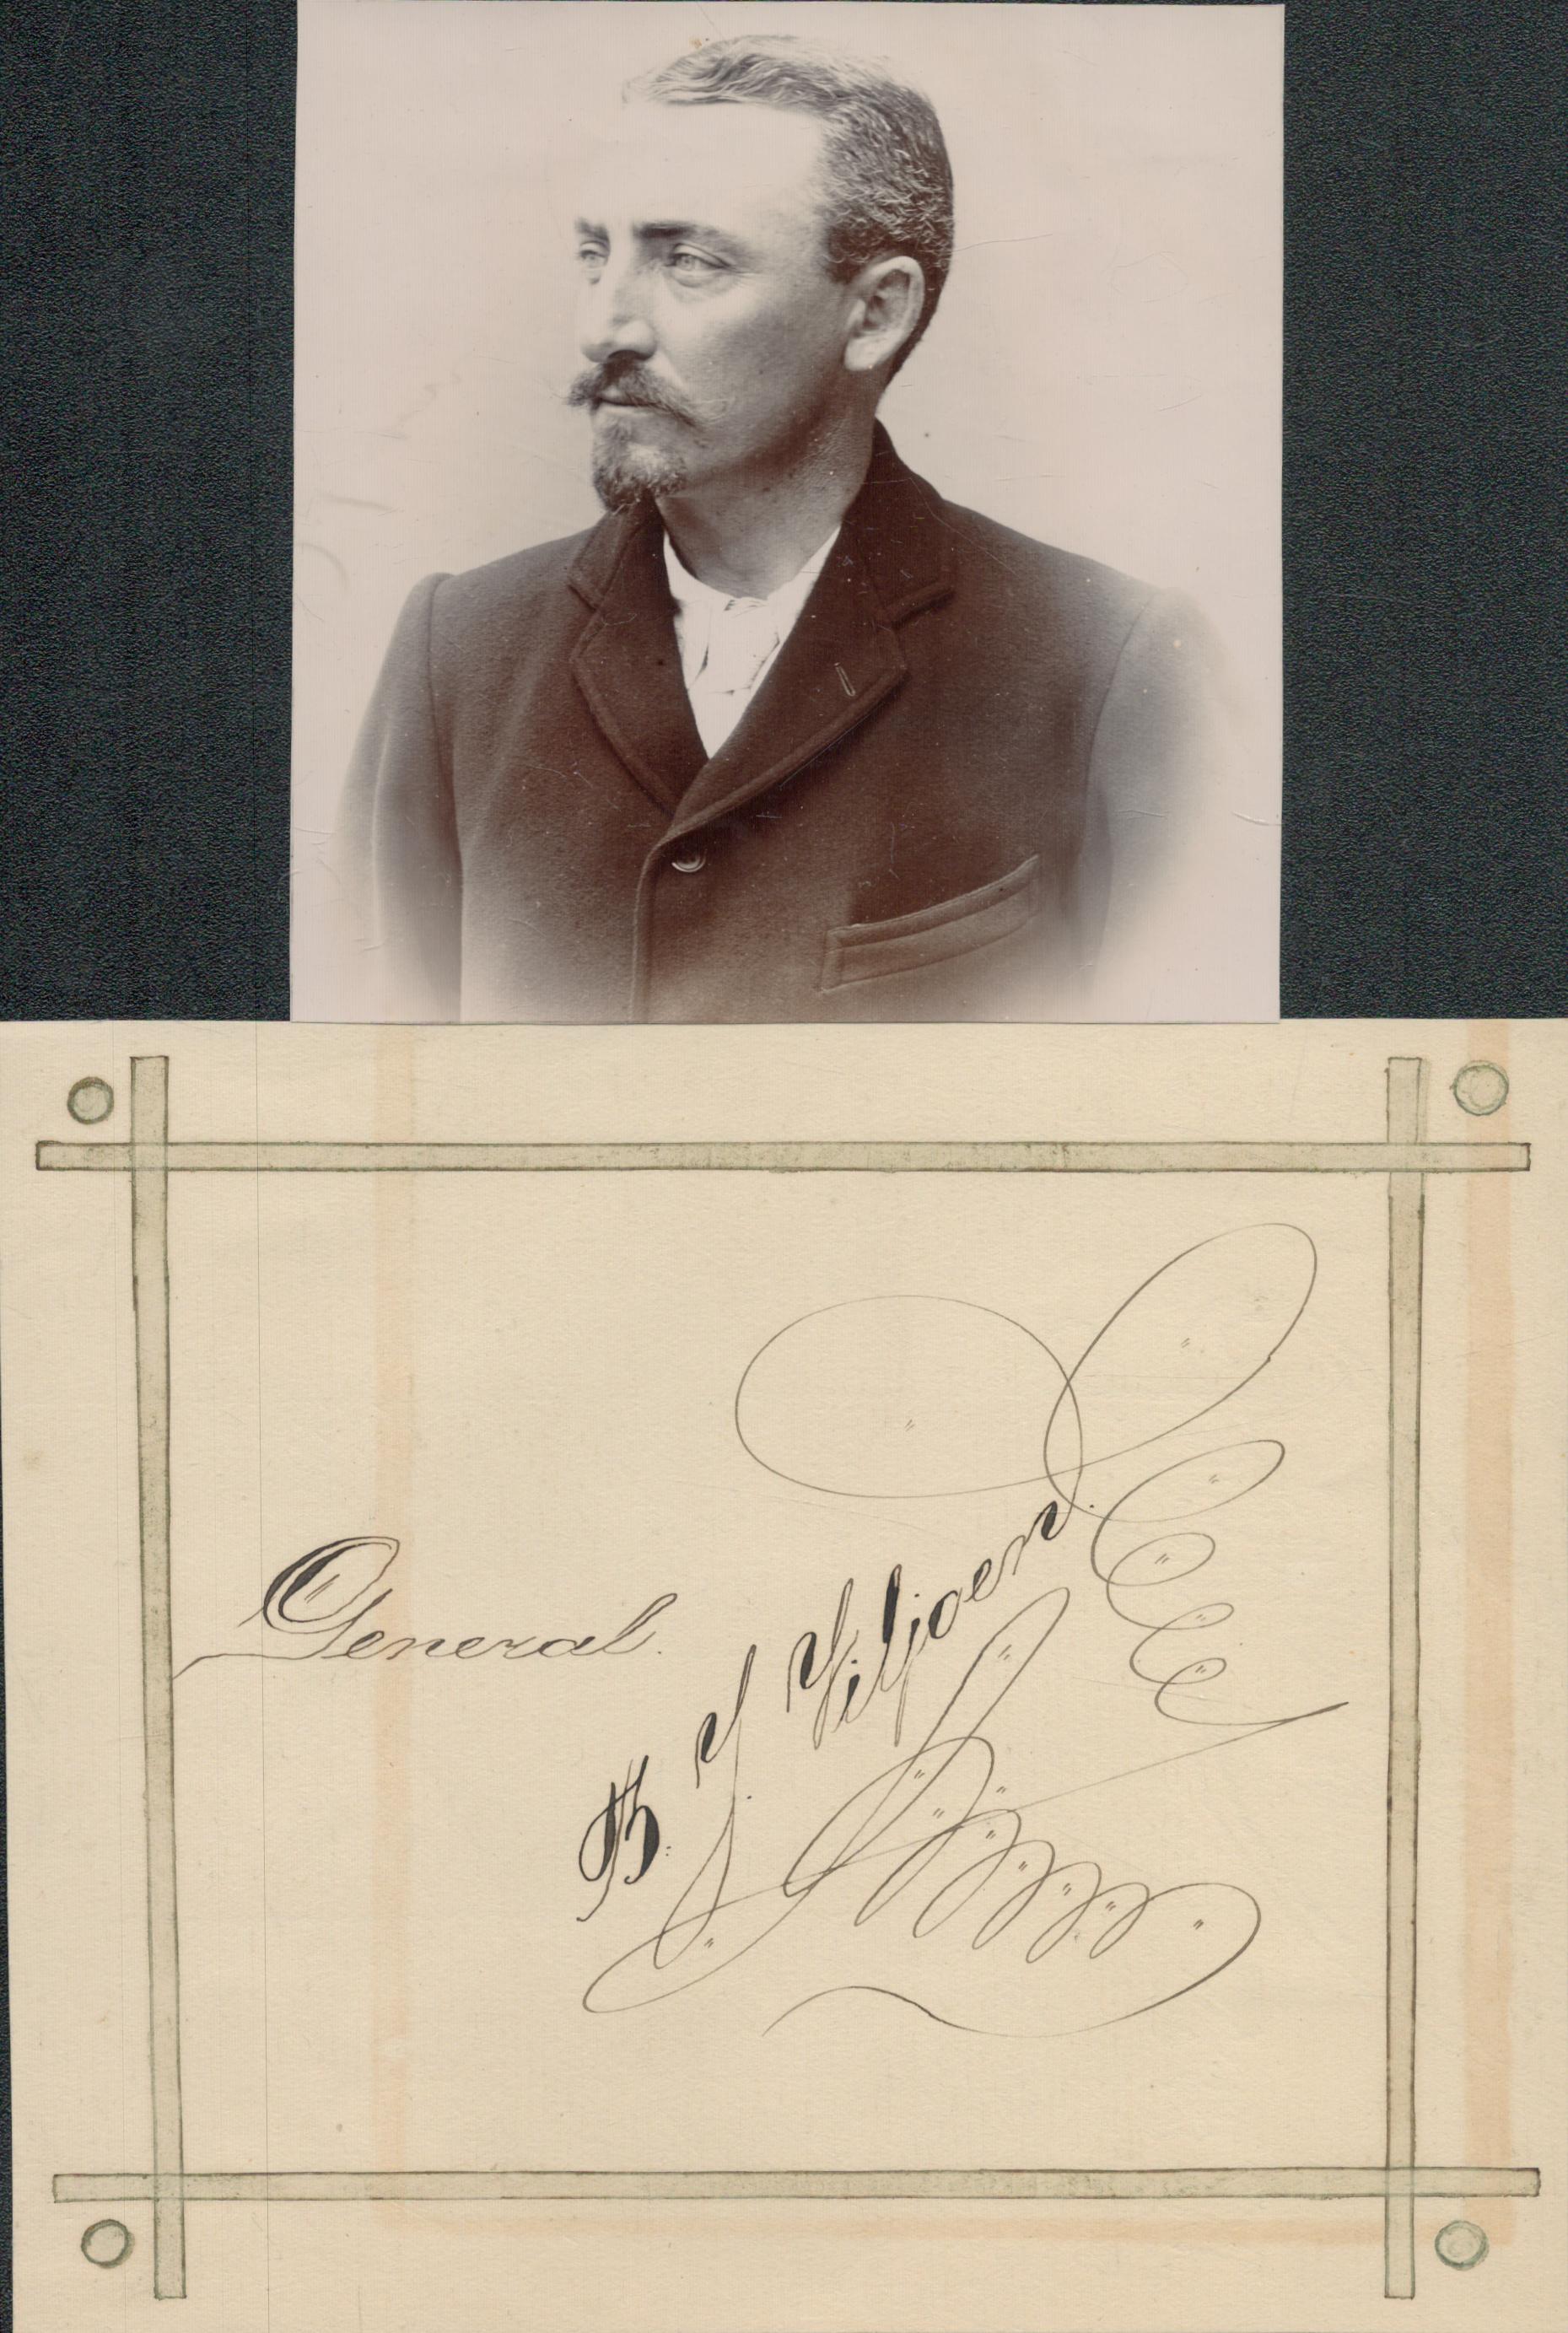 General Ben Viljoen, Boer War General, signed when a Prisoner of War on St Helena c1902. The photo